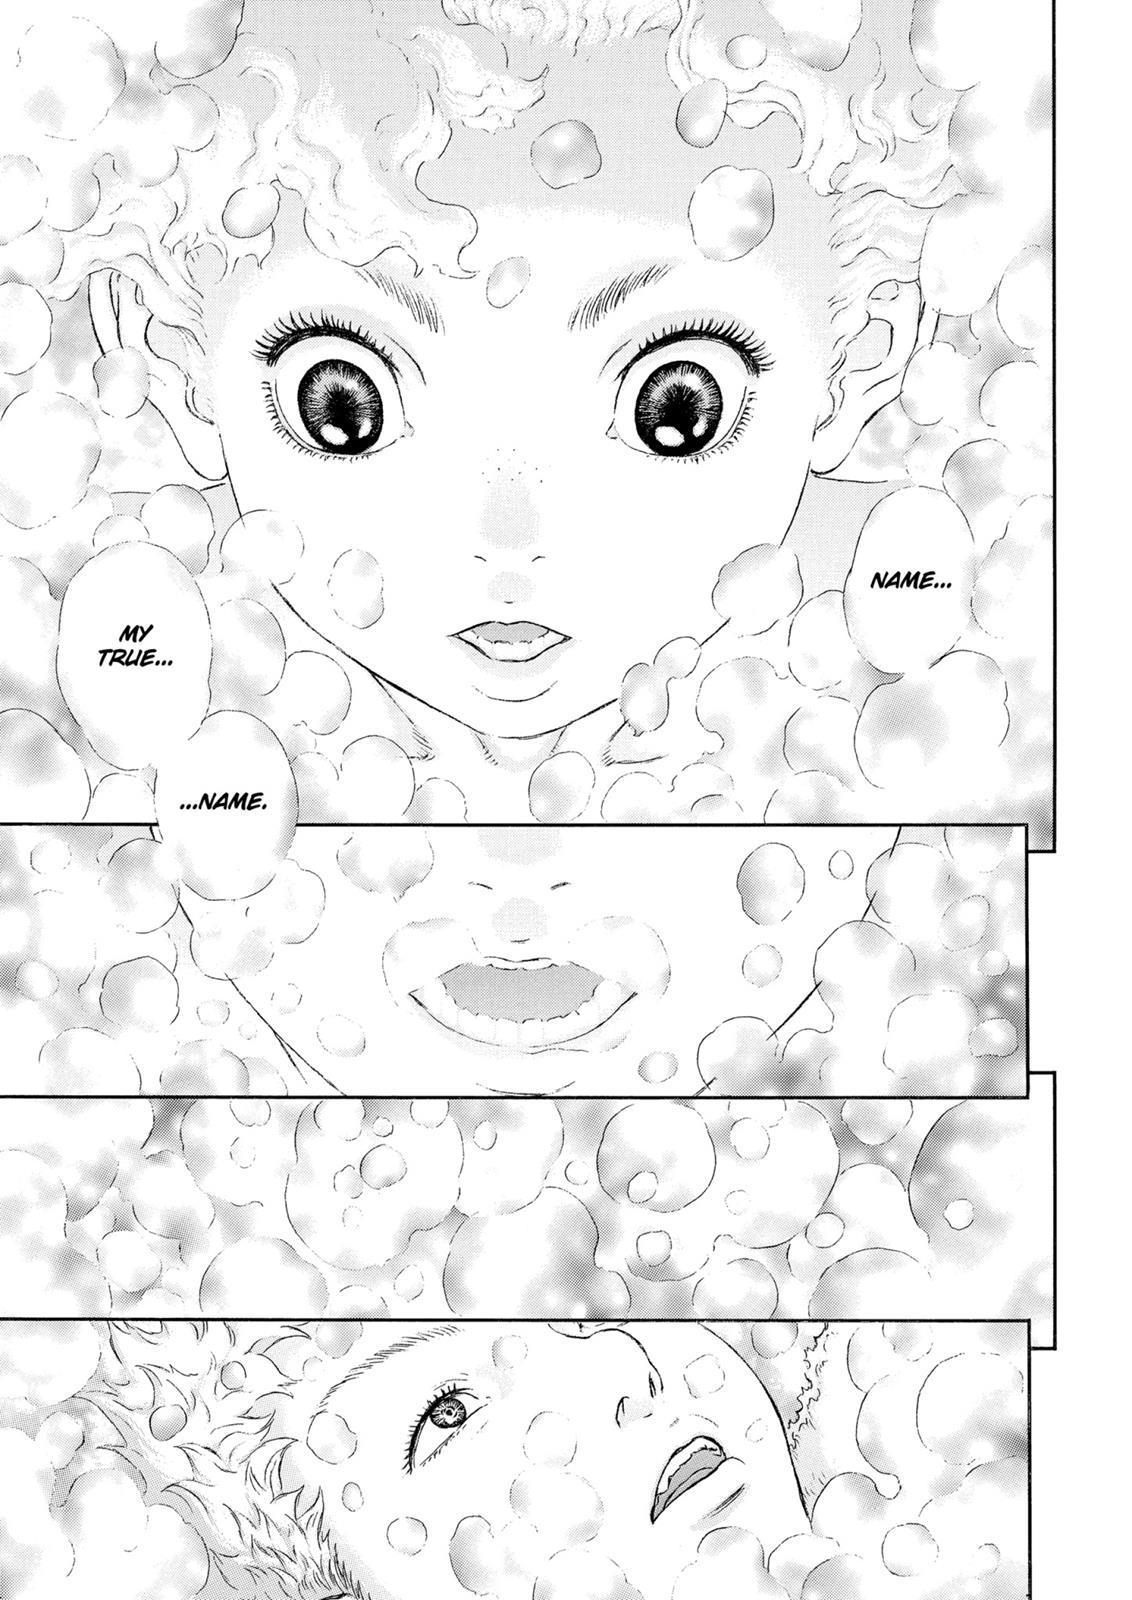 Berserk Manga Chapter 323 image 16